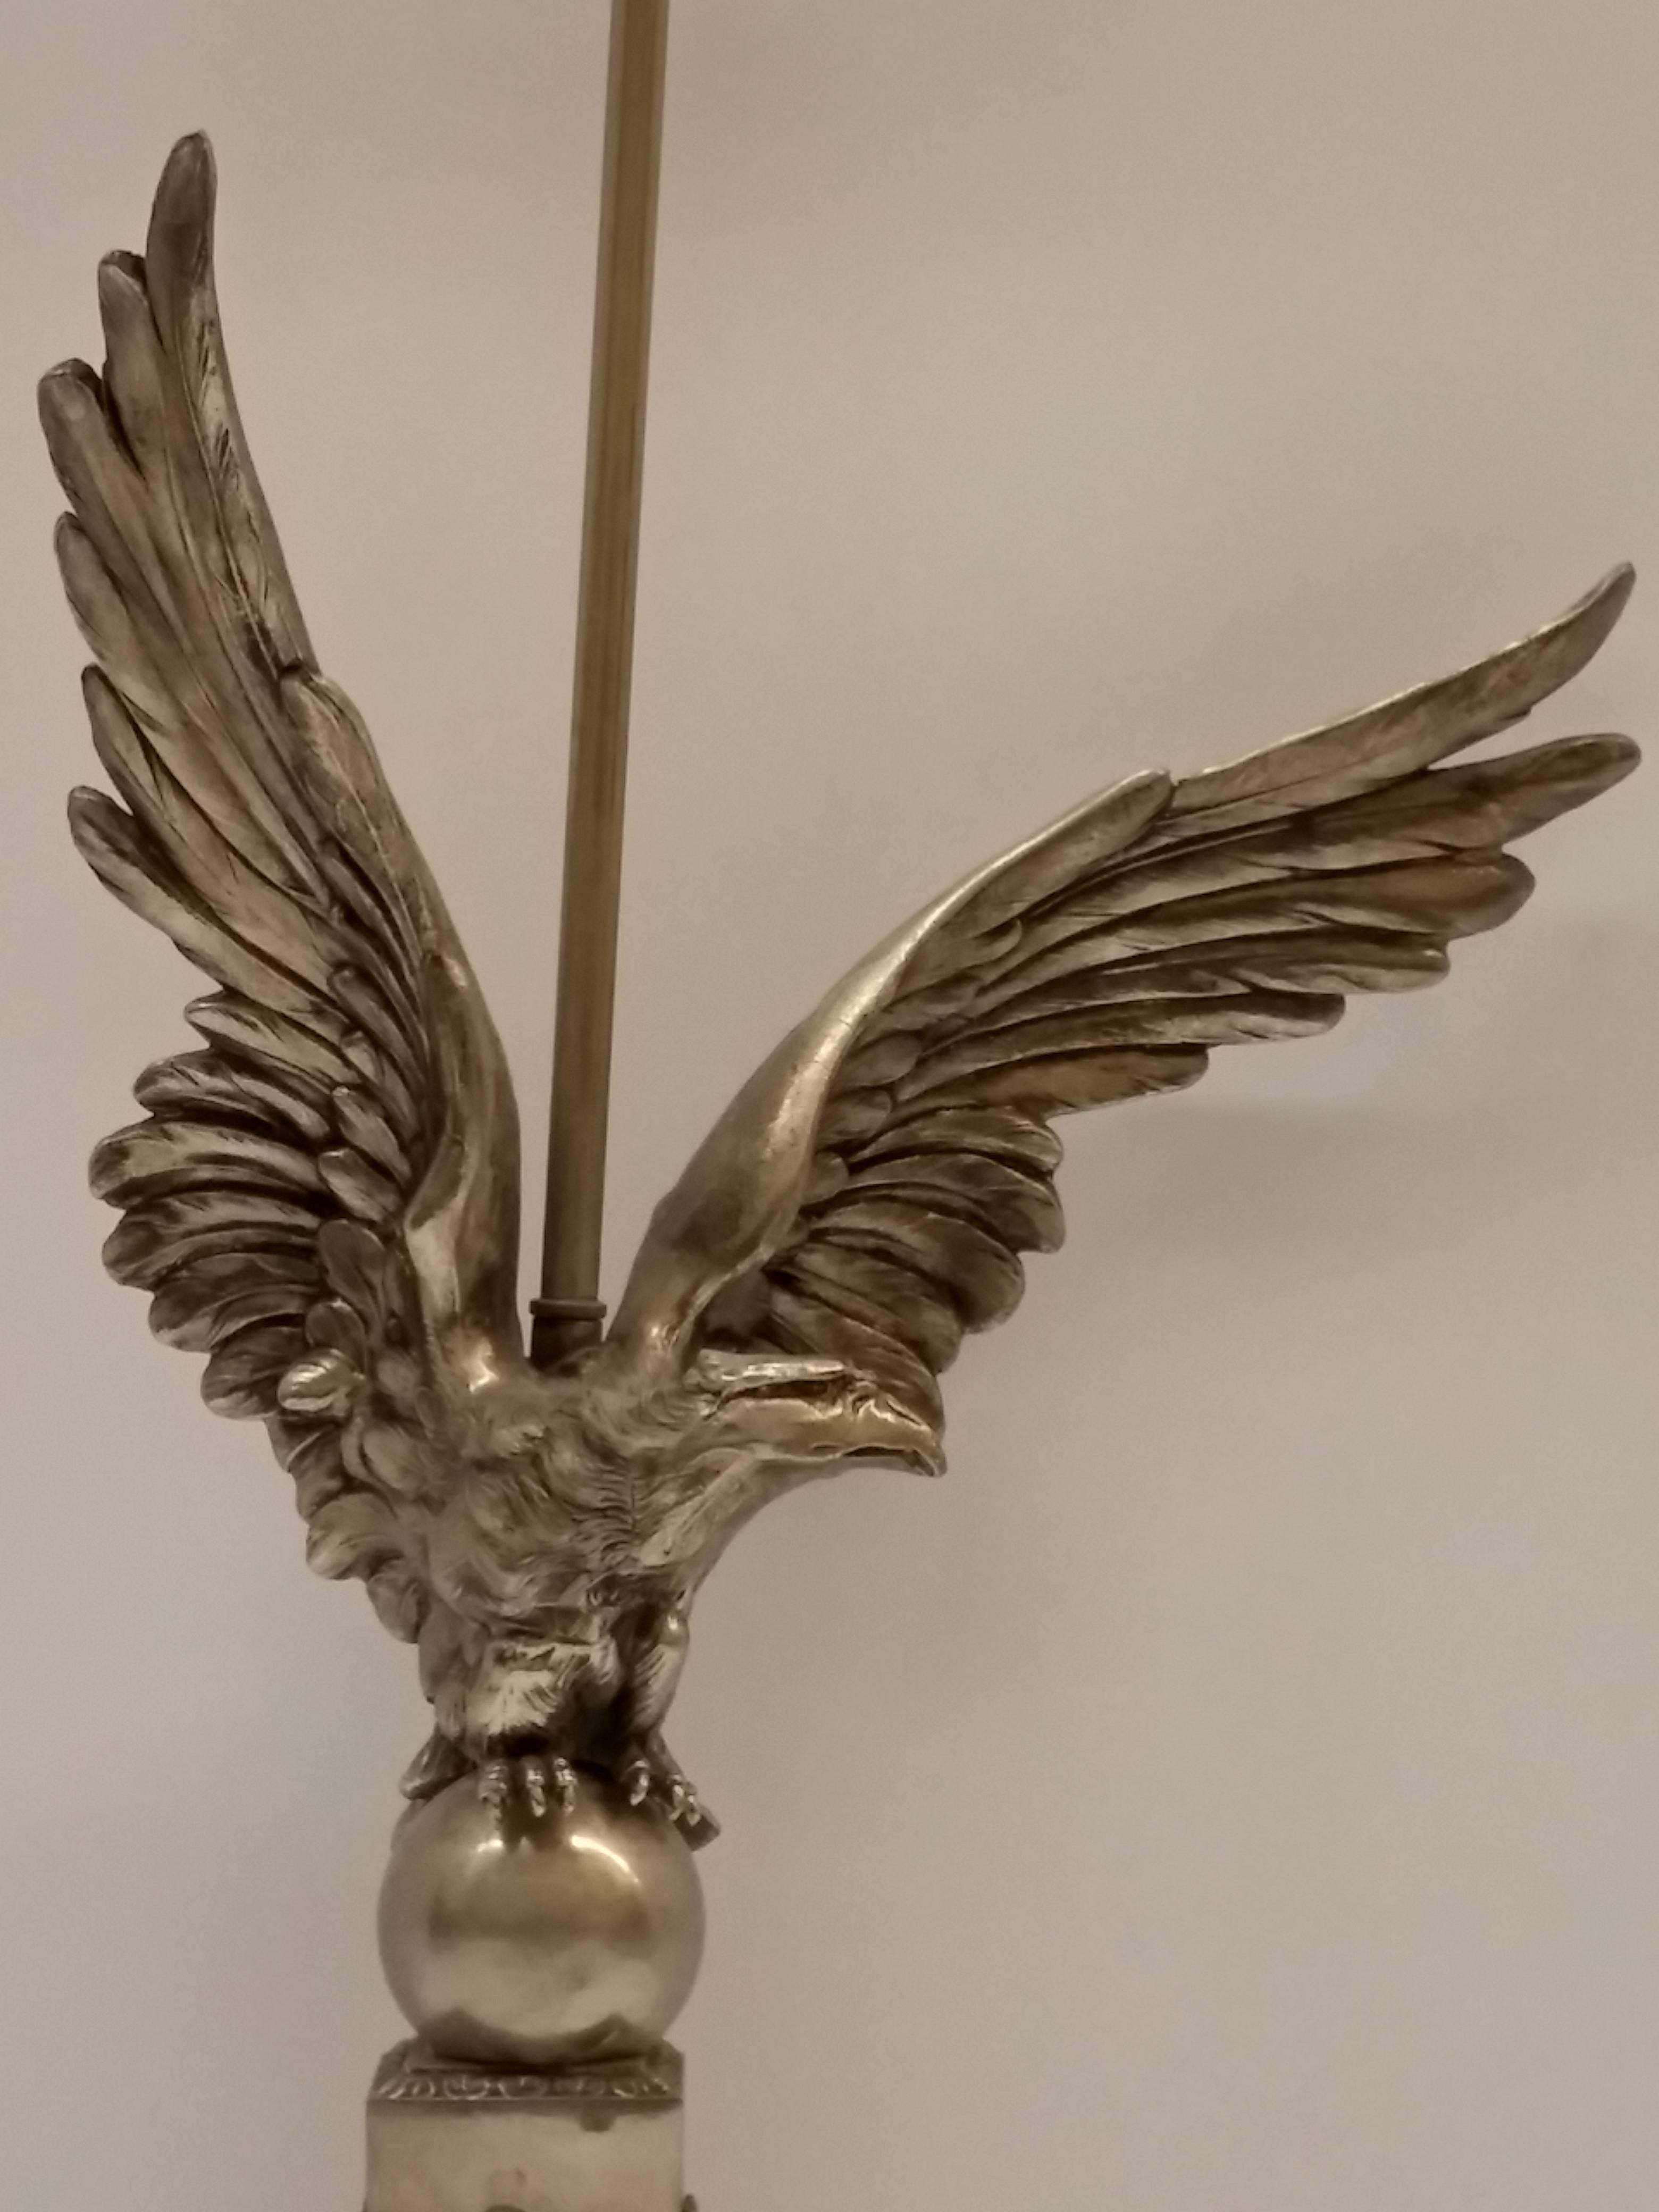 Ein Französisch Art Deco Adler Motiv Tisch, Schreibtischlampe in vernickelt Bronze mit leichten schwarzen Patina in gutem Zustand. Kostenlose Abholung im Dreistaatengebiet. Wir sind die seltene Quelle, die sich seit über drei Jahrzehnten